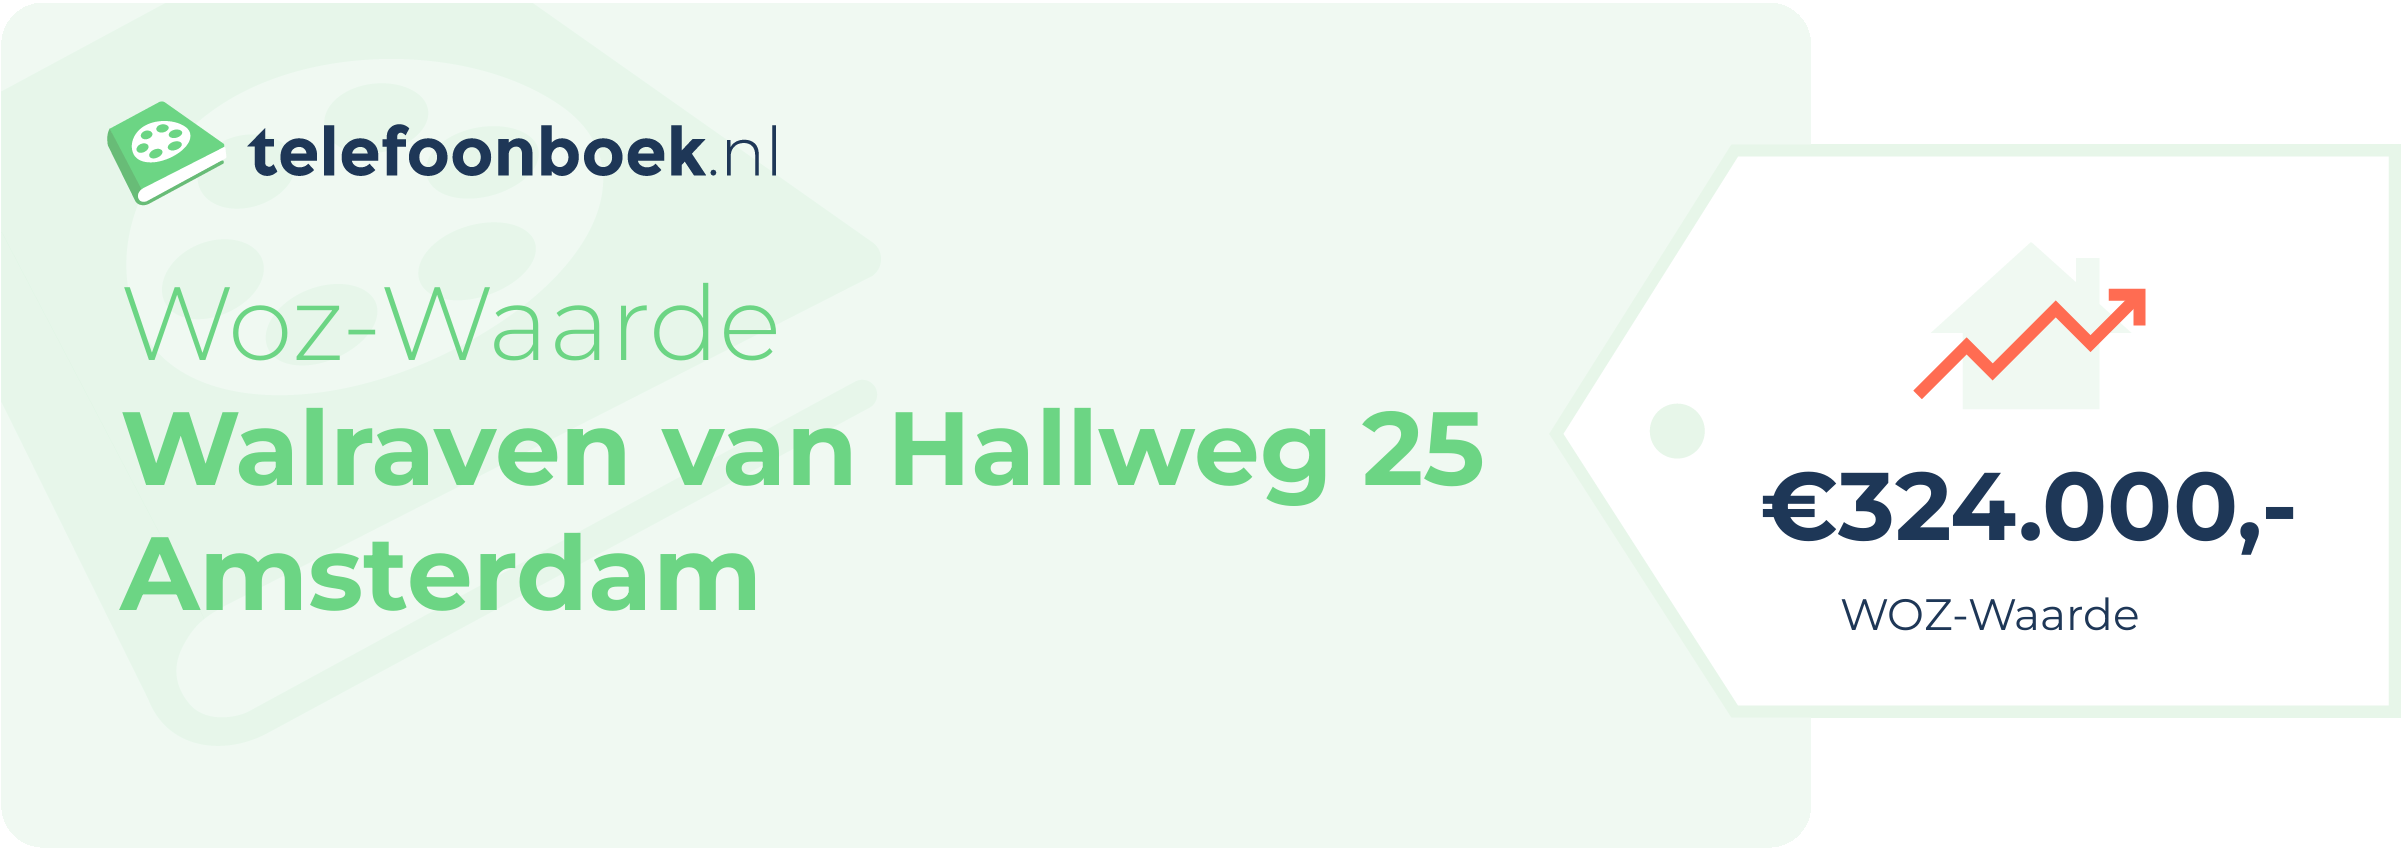 WOZ-waarde Walraven Van Hallweg 25 Amsterdam